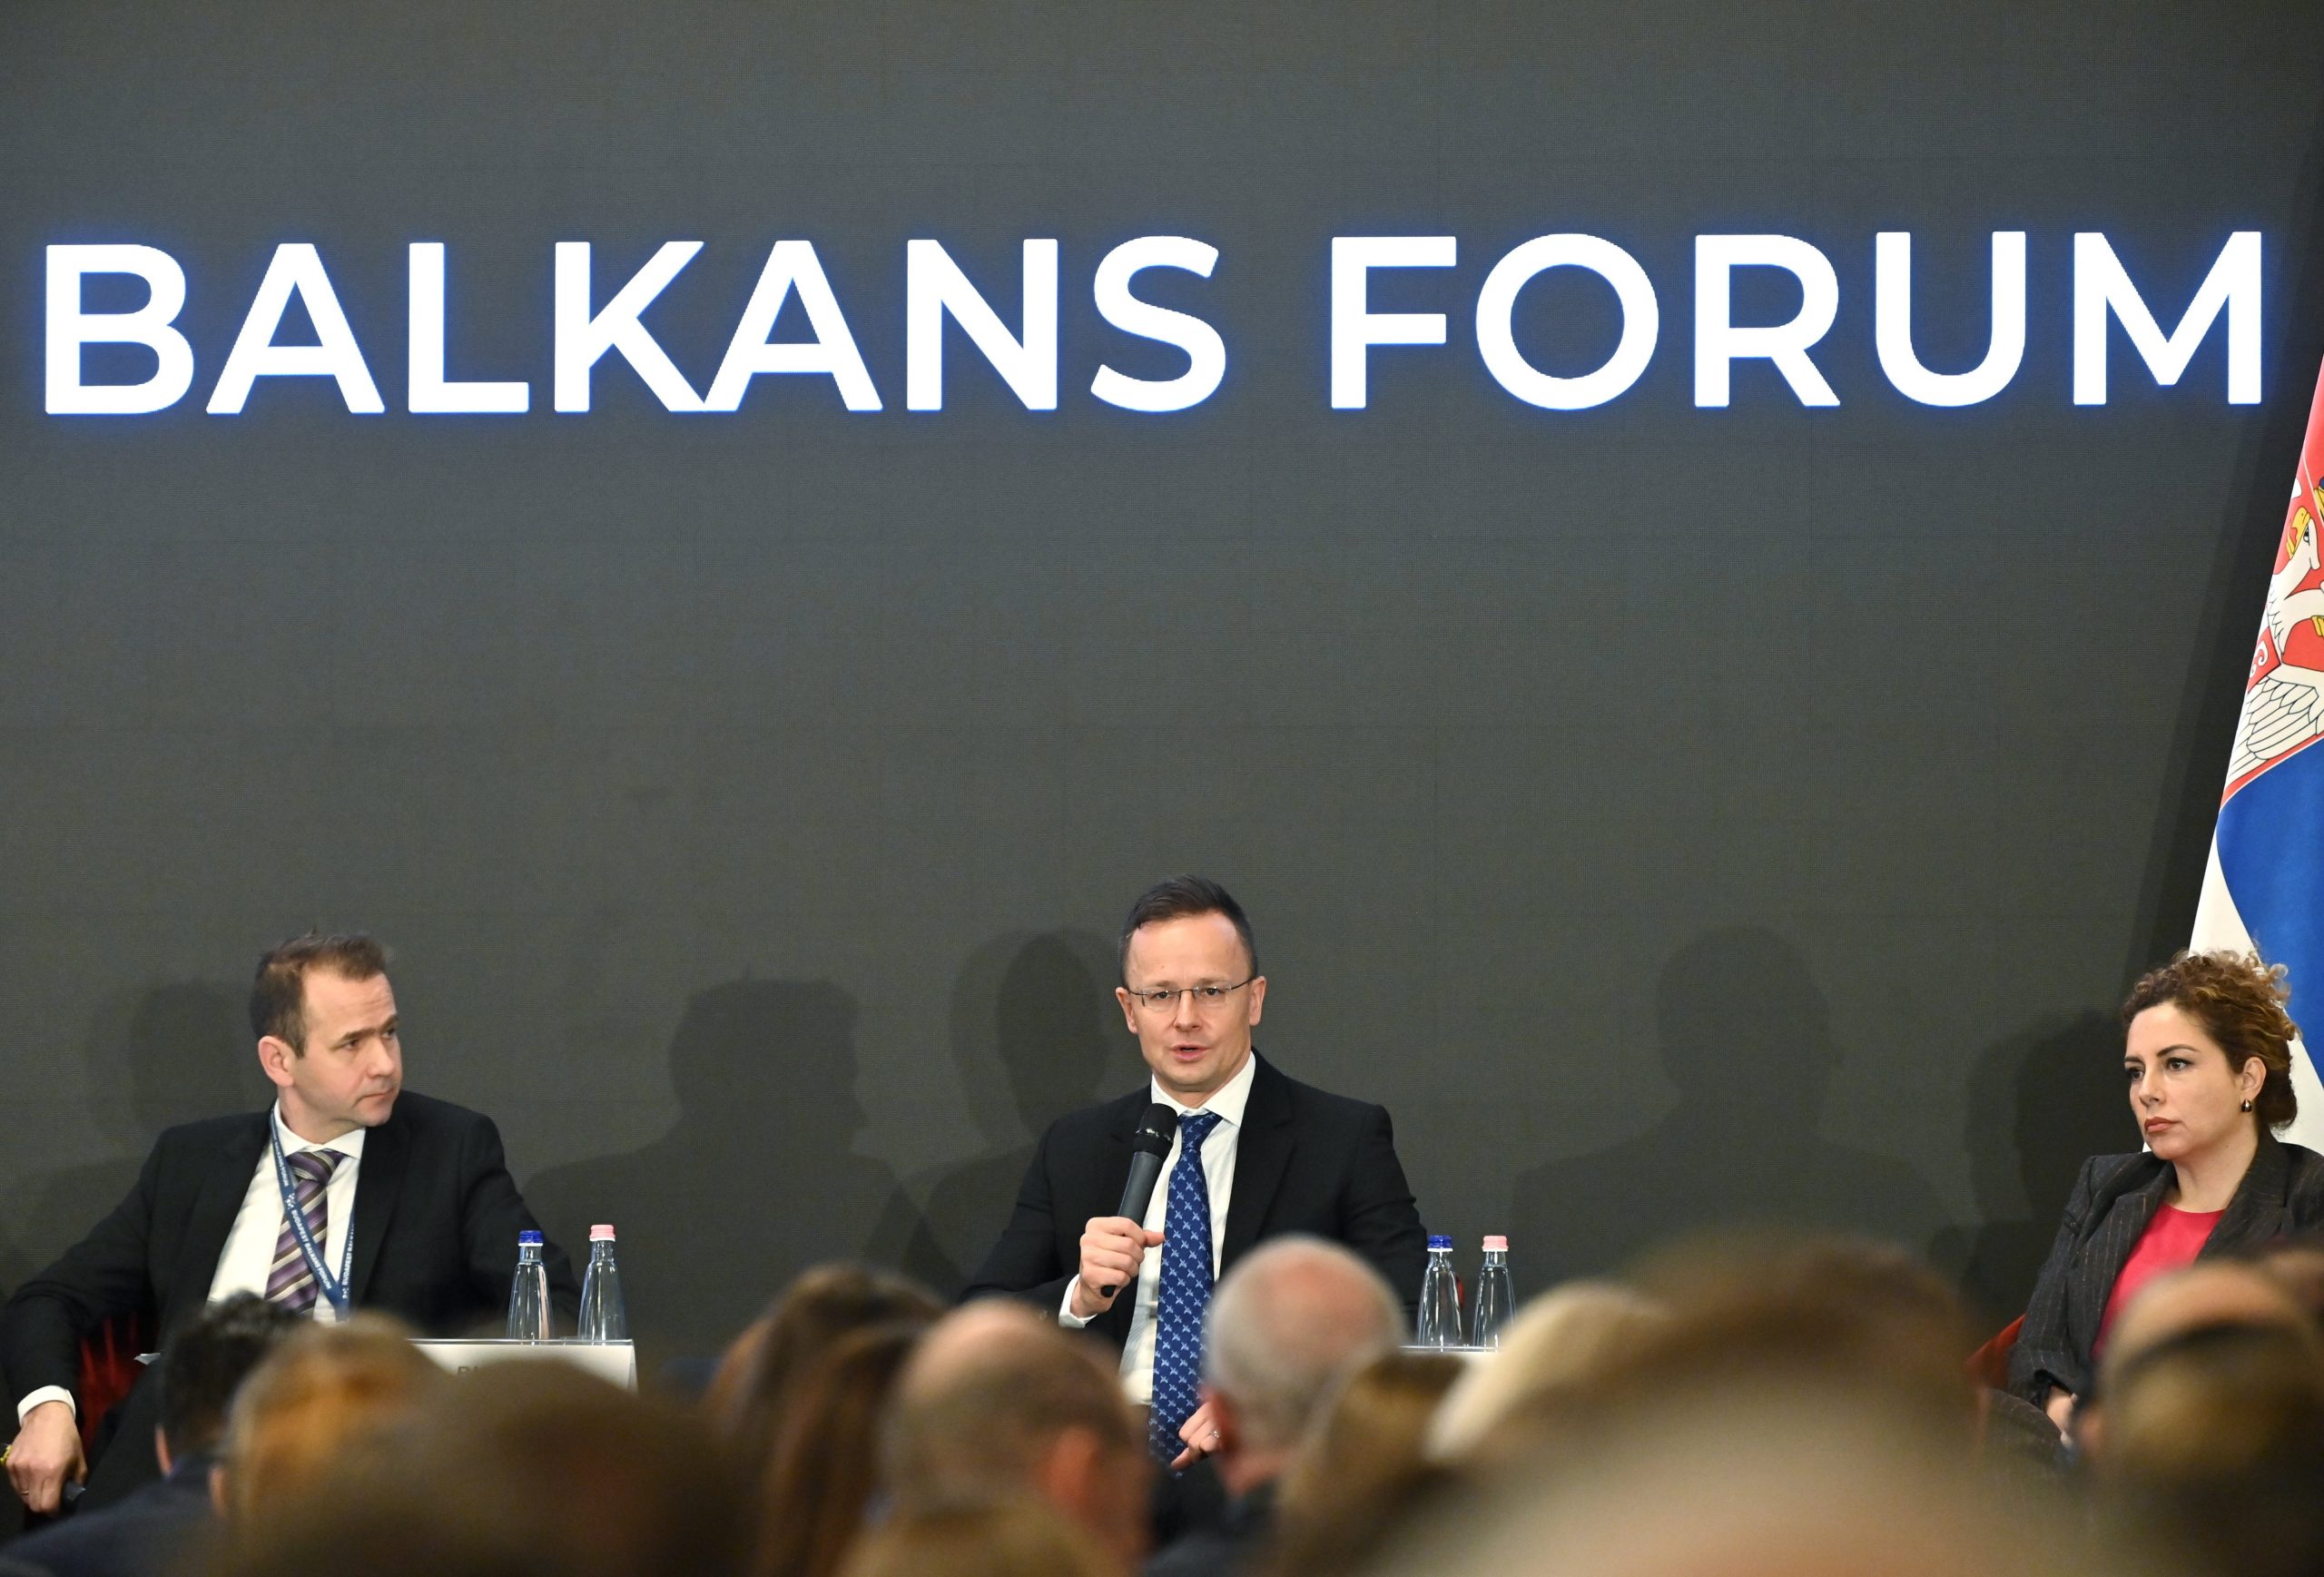 Die EU braucht den Westbalkan jetzt mehr als andersherum, so Außenminister Szijjártó